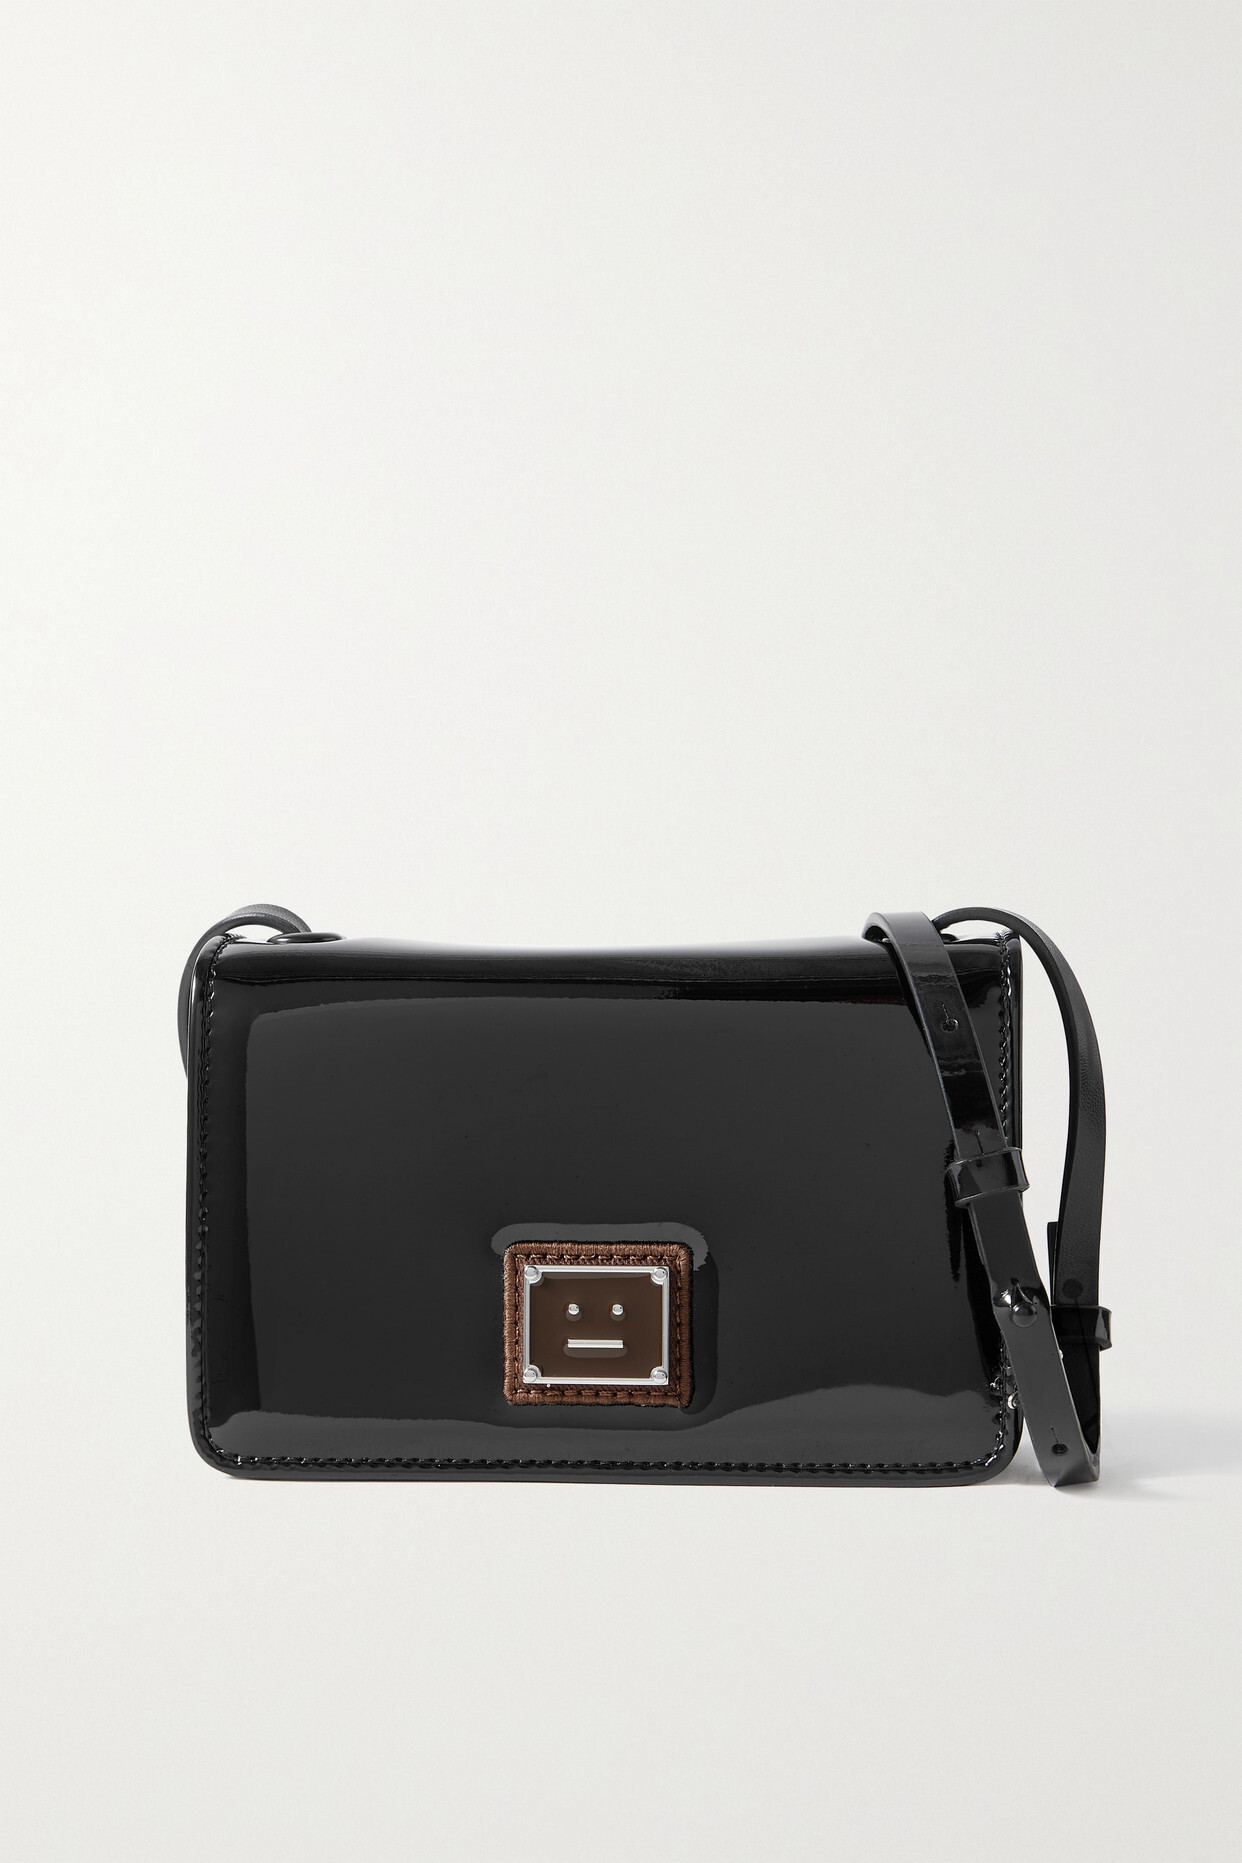 Acne Studios - Appliquéd Faux Patent-leather Shoulder Bag - Black